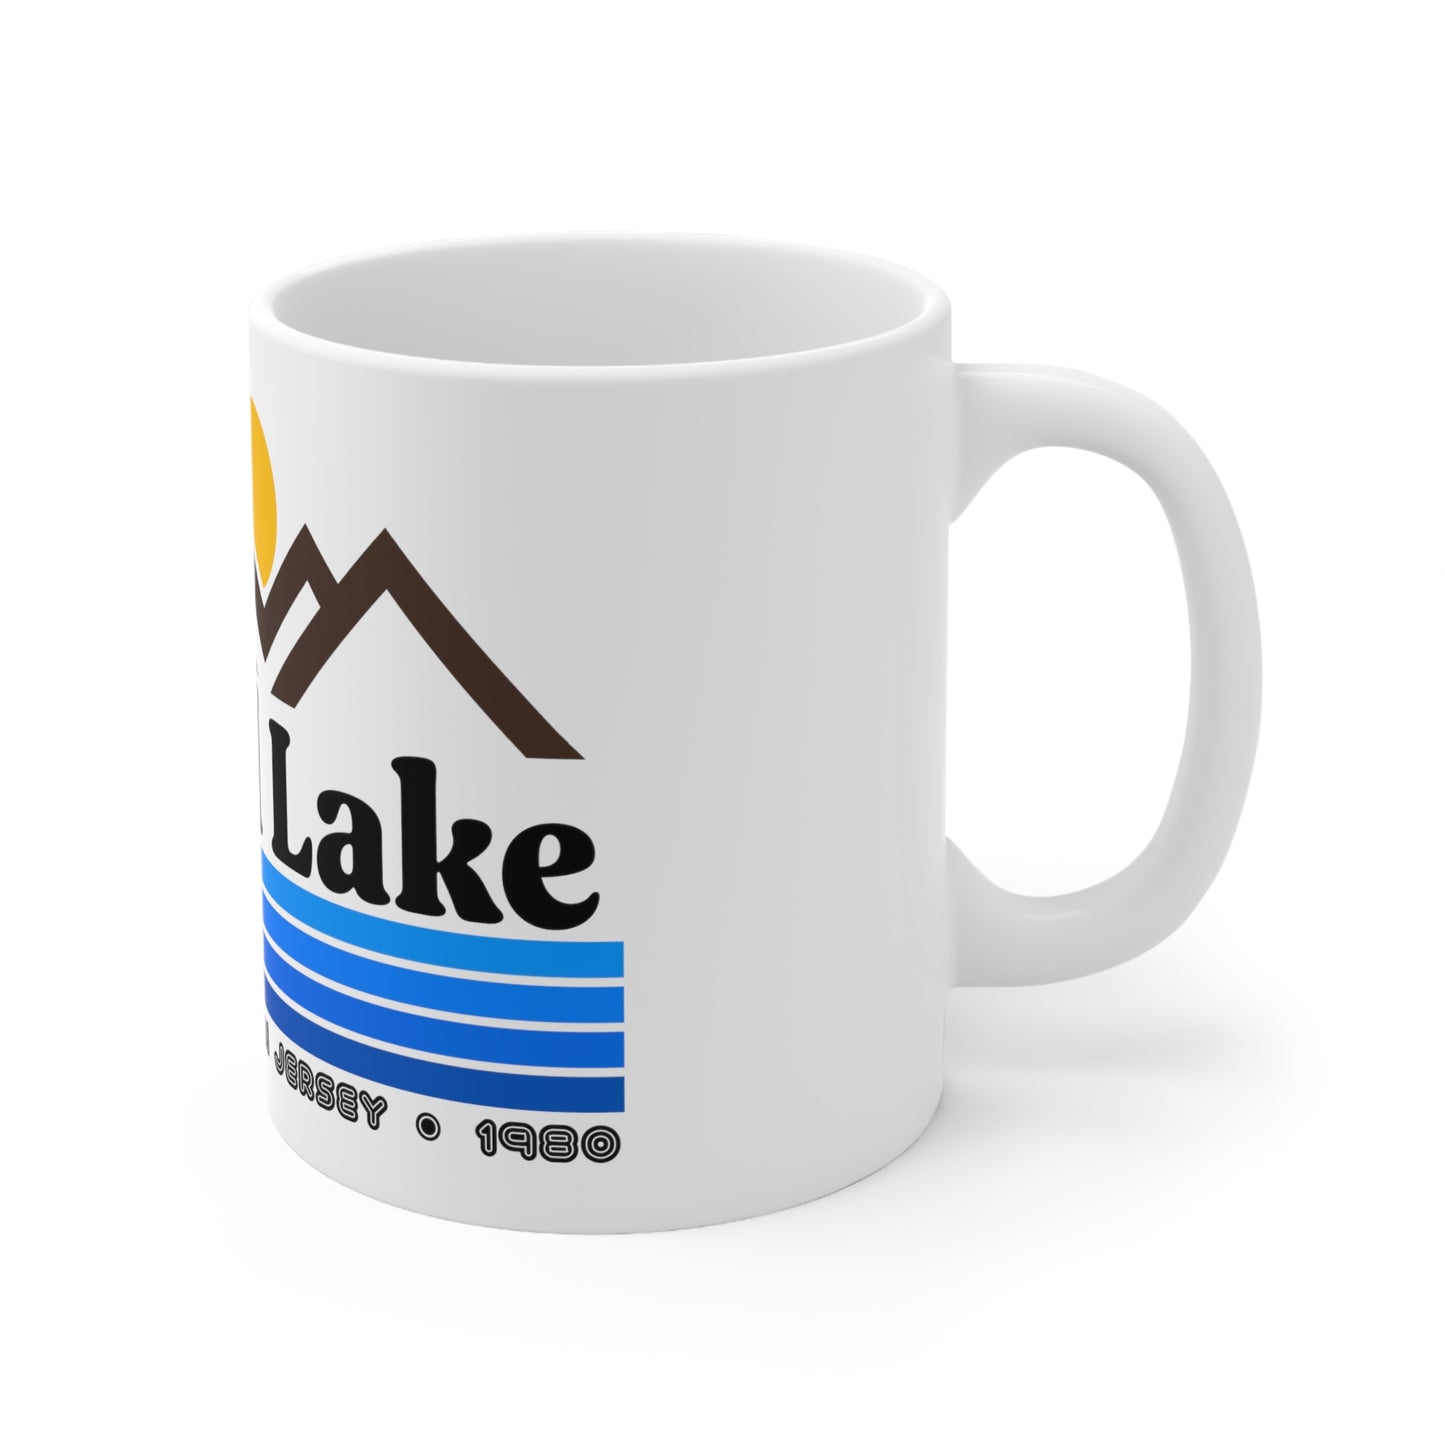 Camp Crystal Lake Ceramic Mug